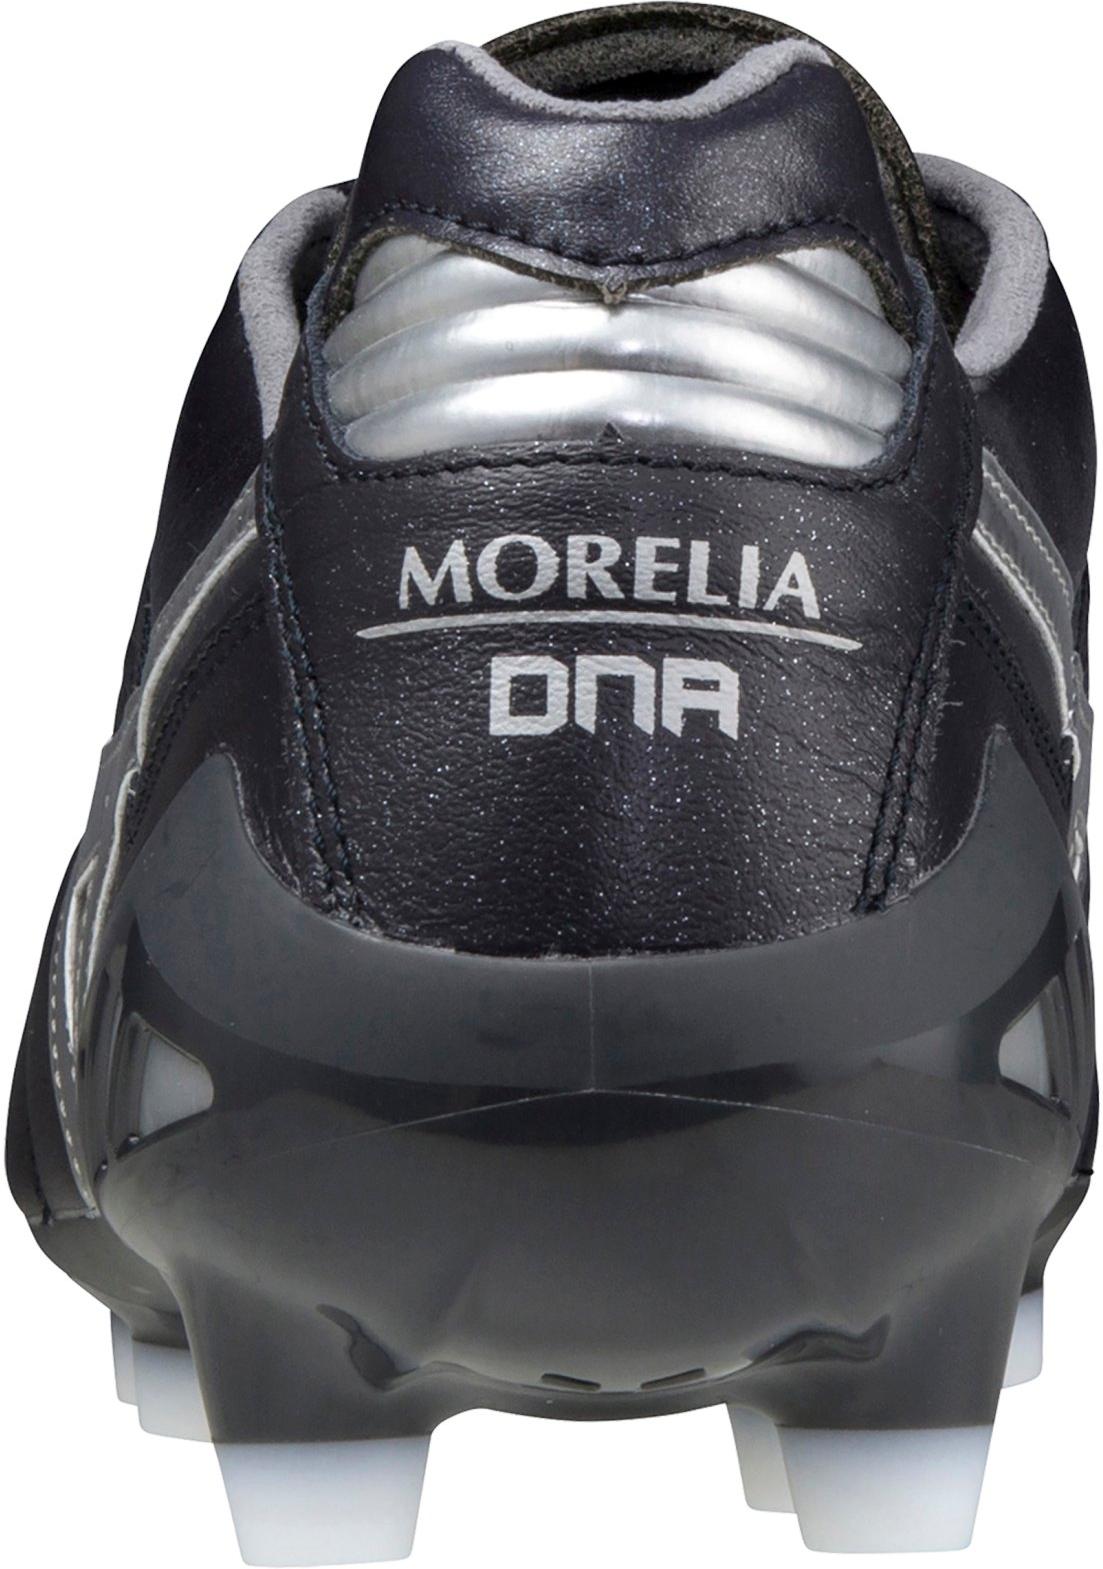 Football shoes Mizuno Morelia DNA Japan FG